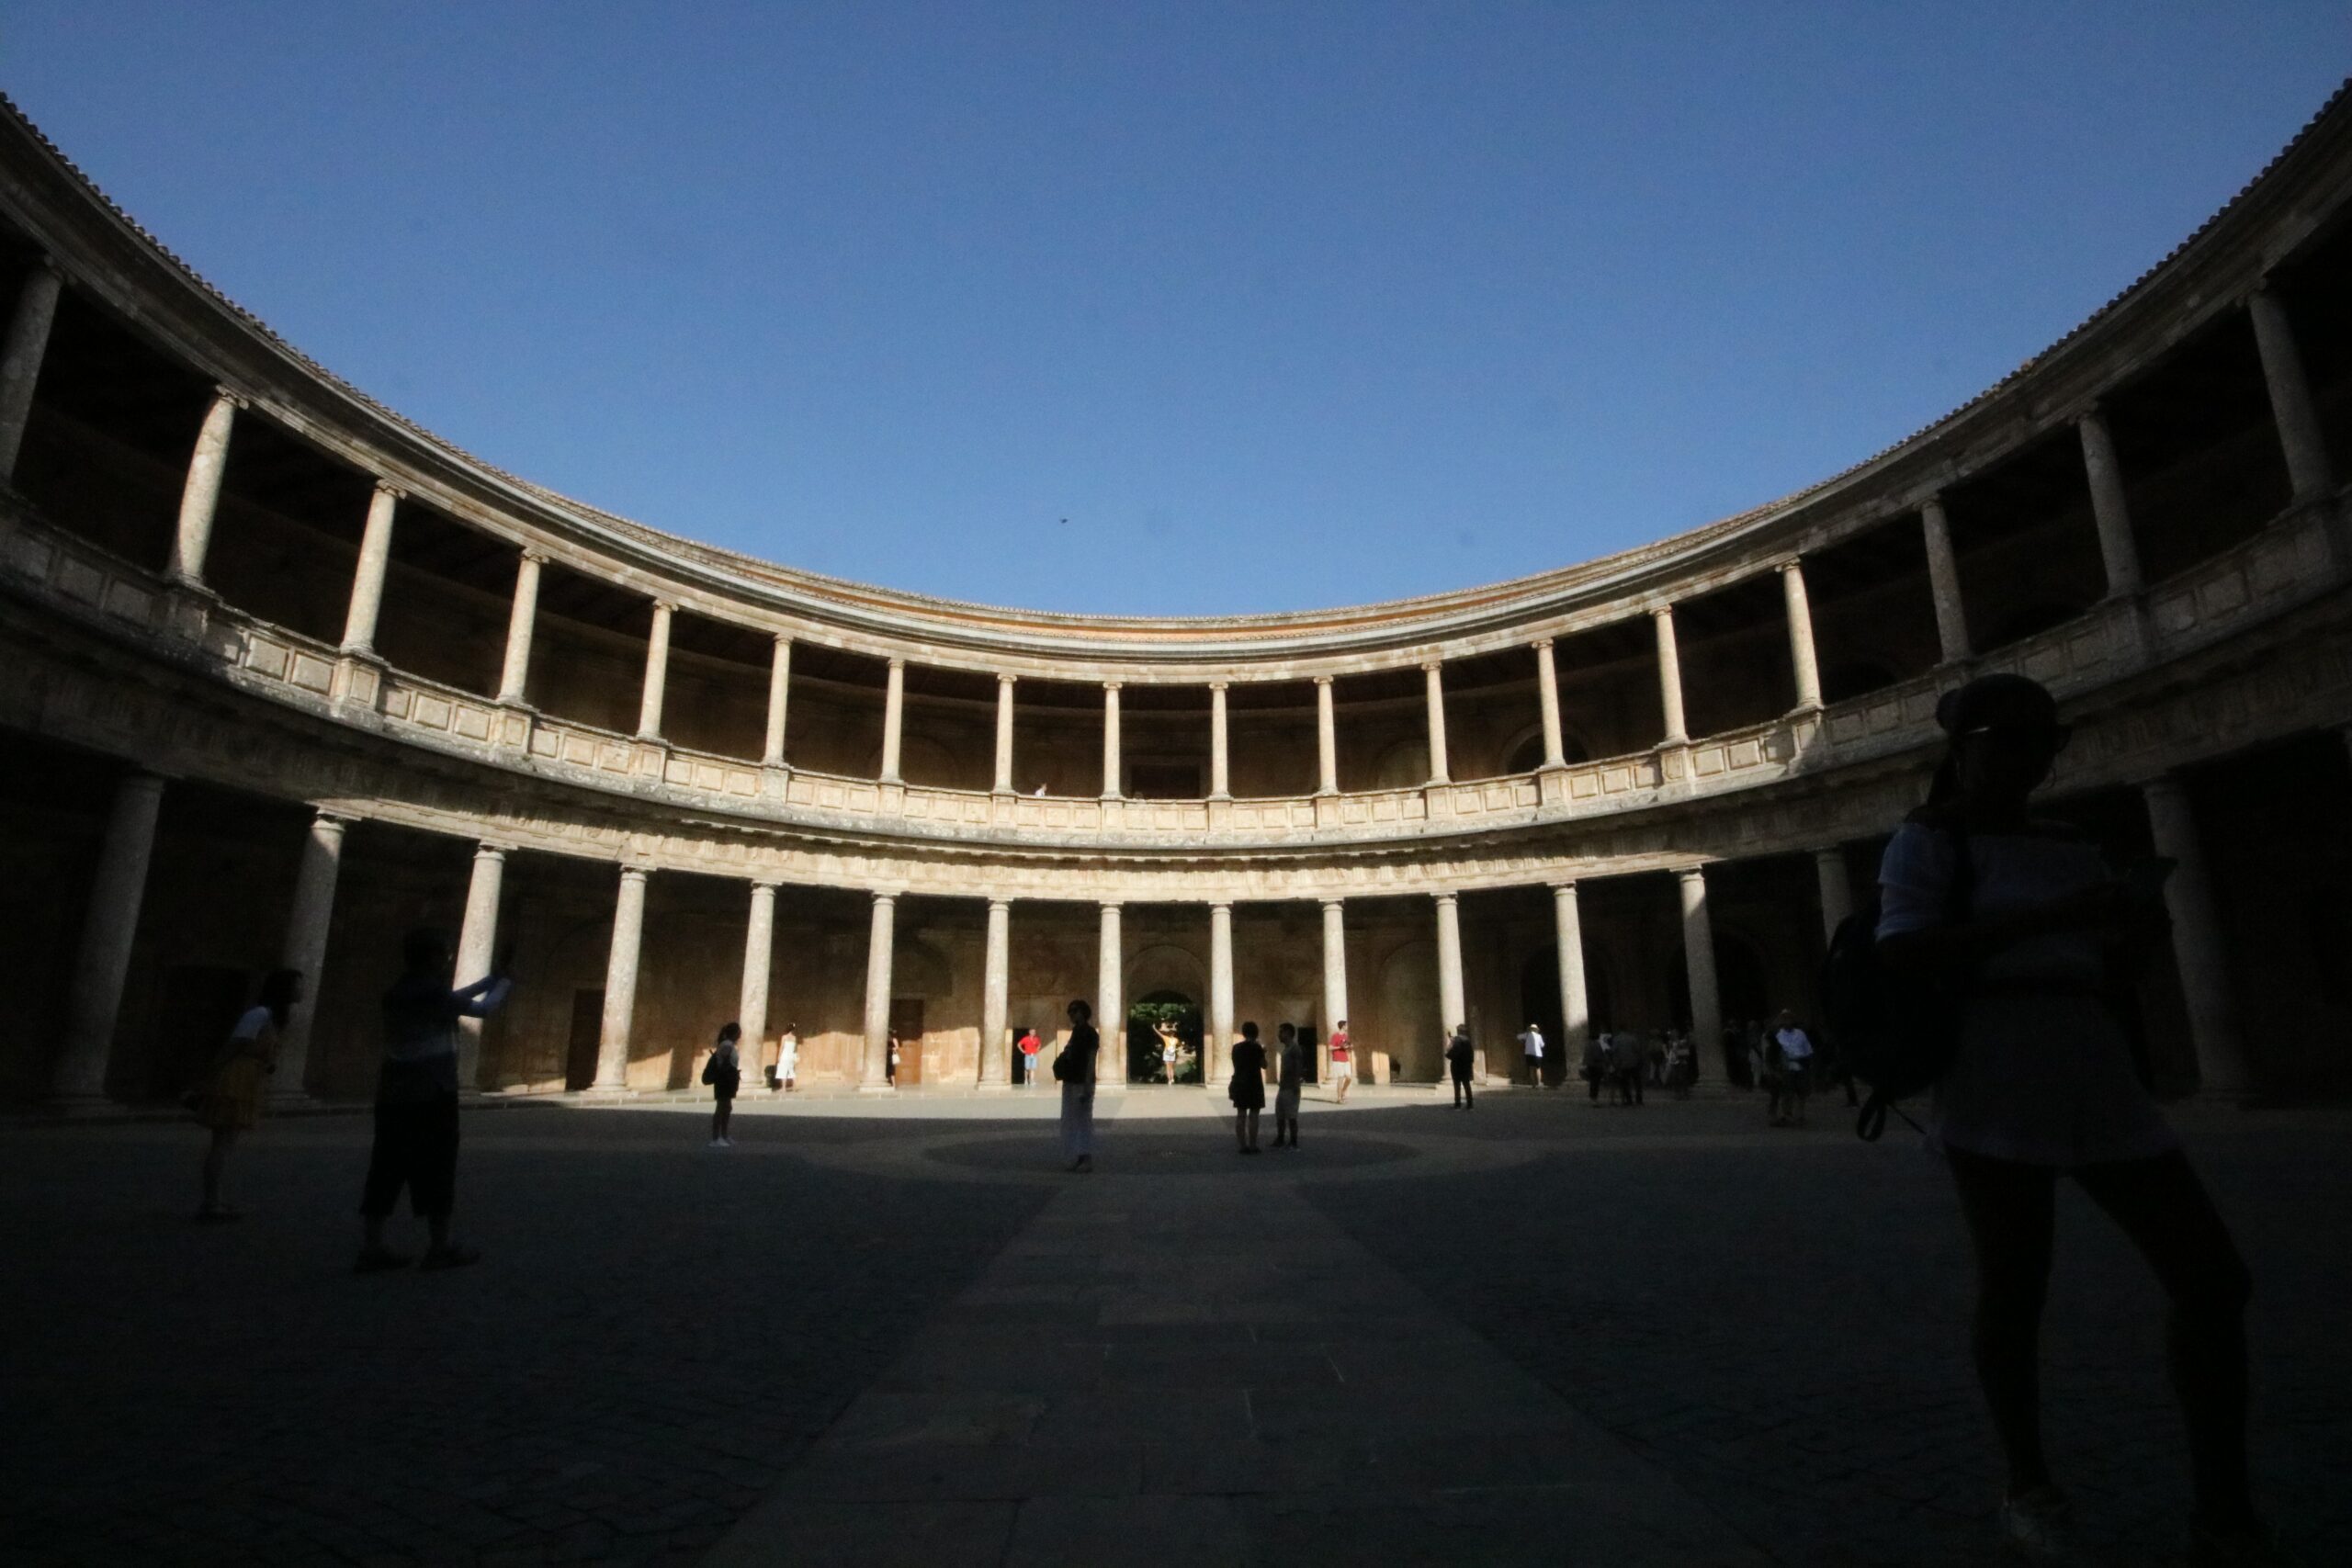 Palace of Carlos V courtyard in shade